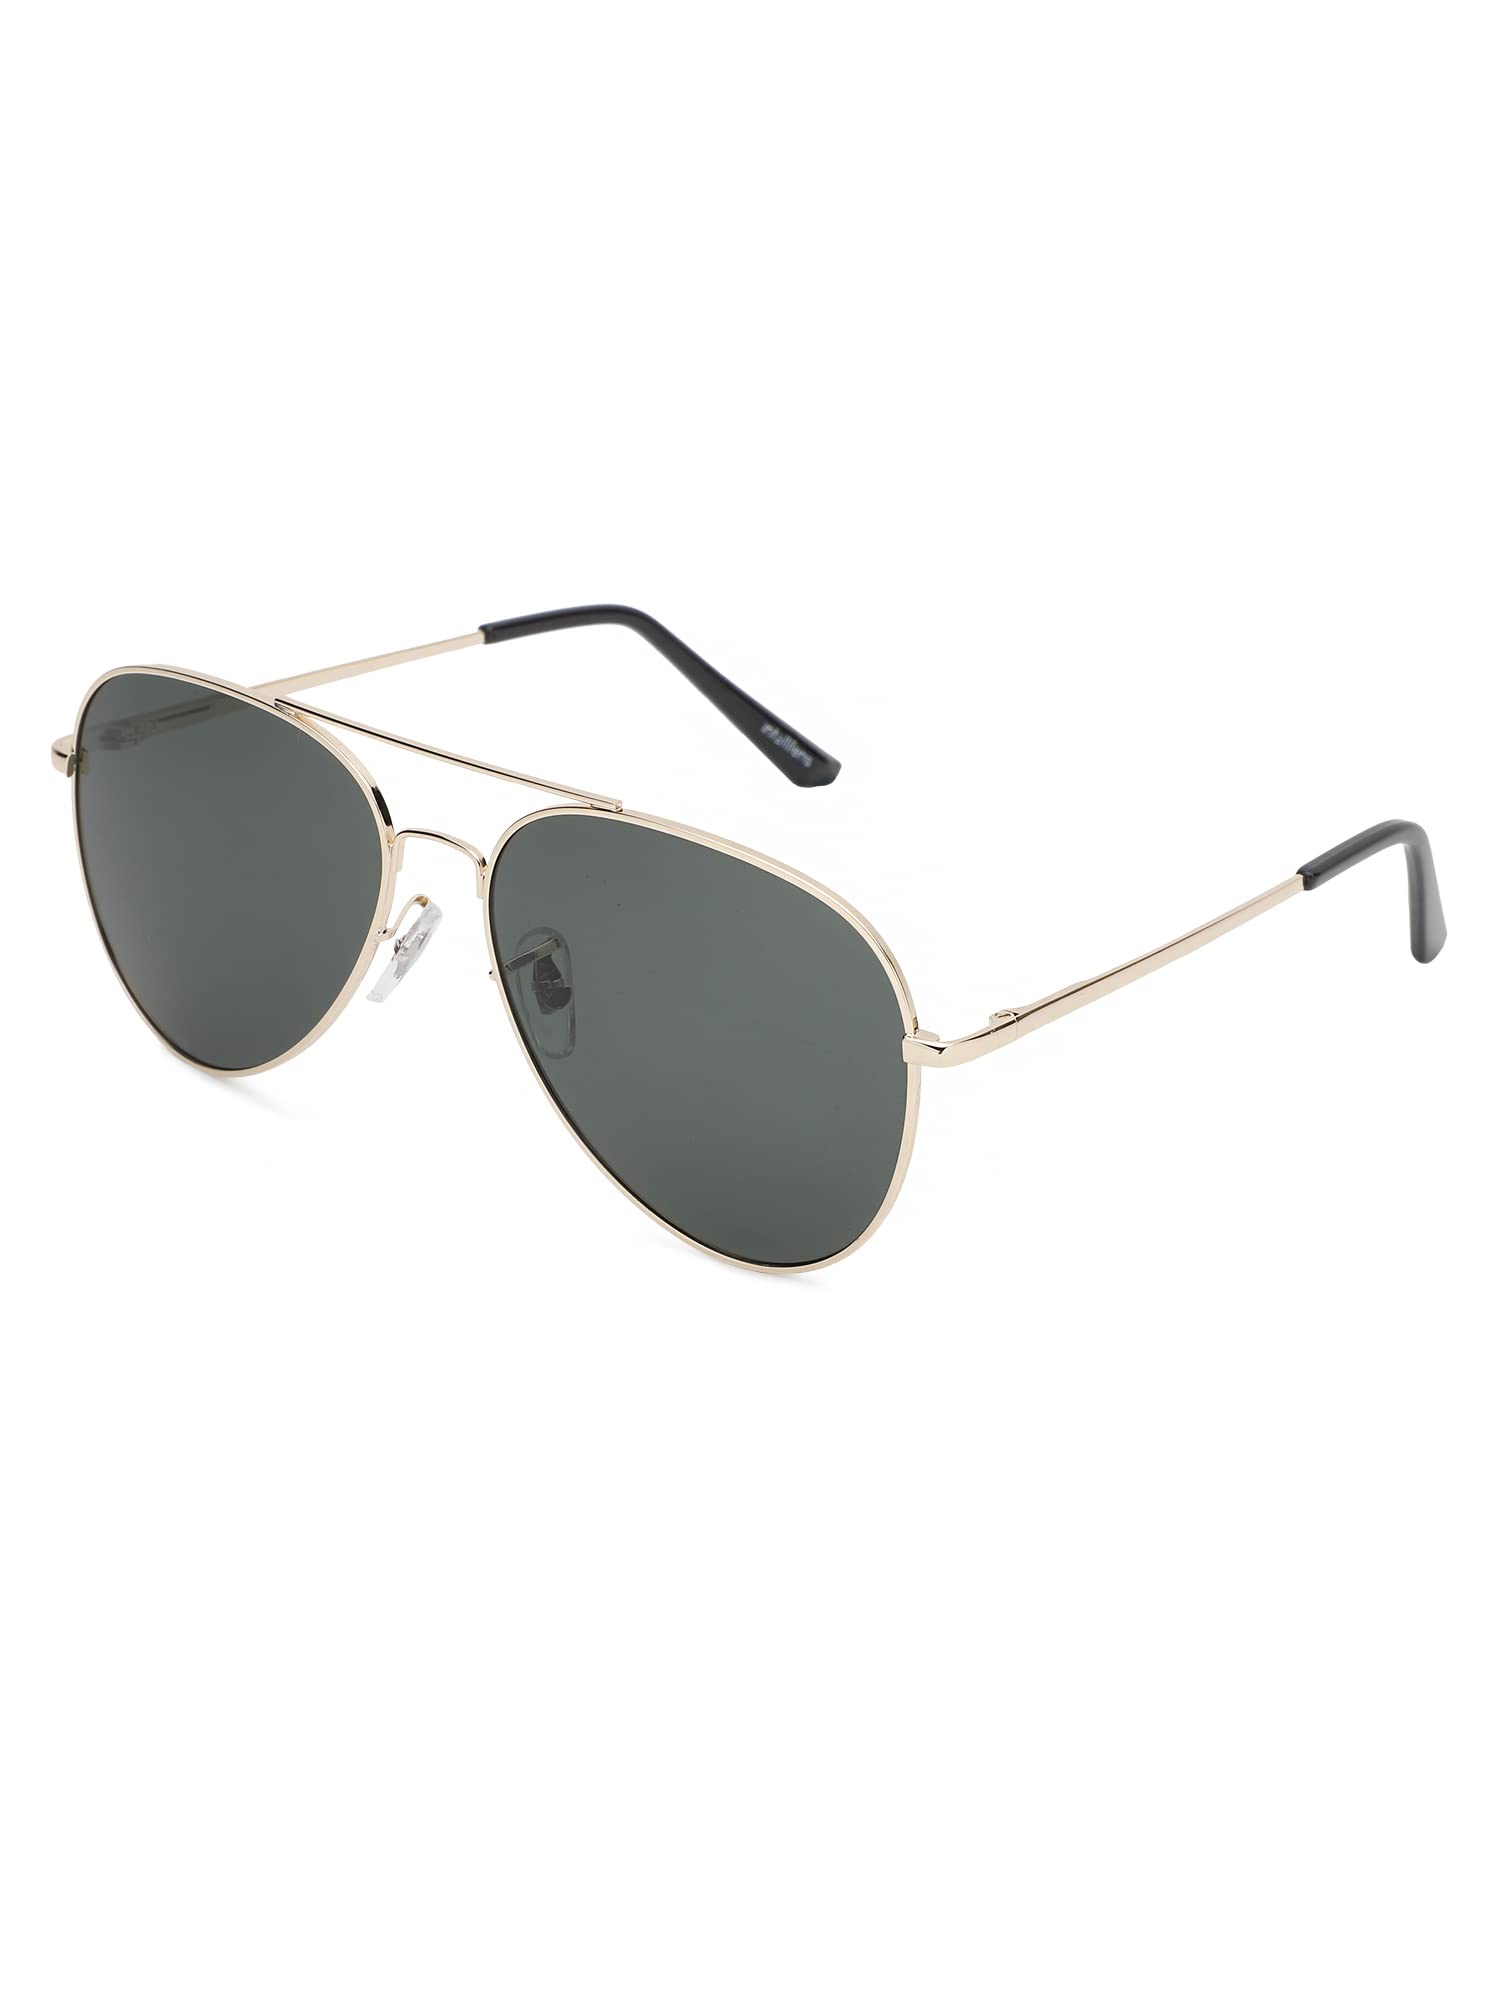 Intellilens Aviator UV Protection Sunglasses For Men & Women | Goggles for Men & Women (Gold) (60-20-145)